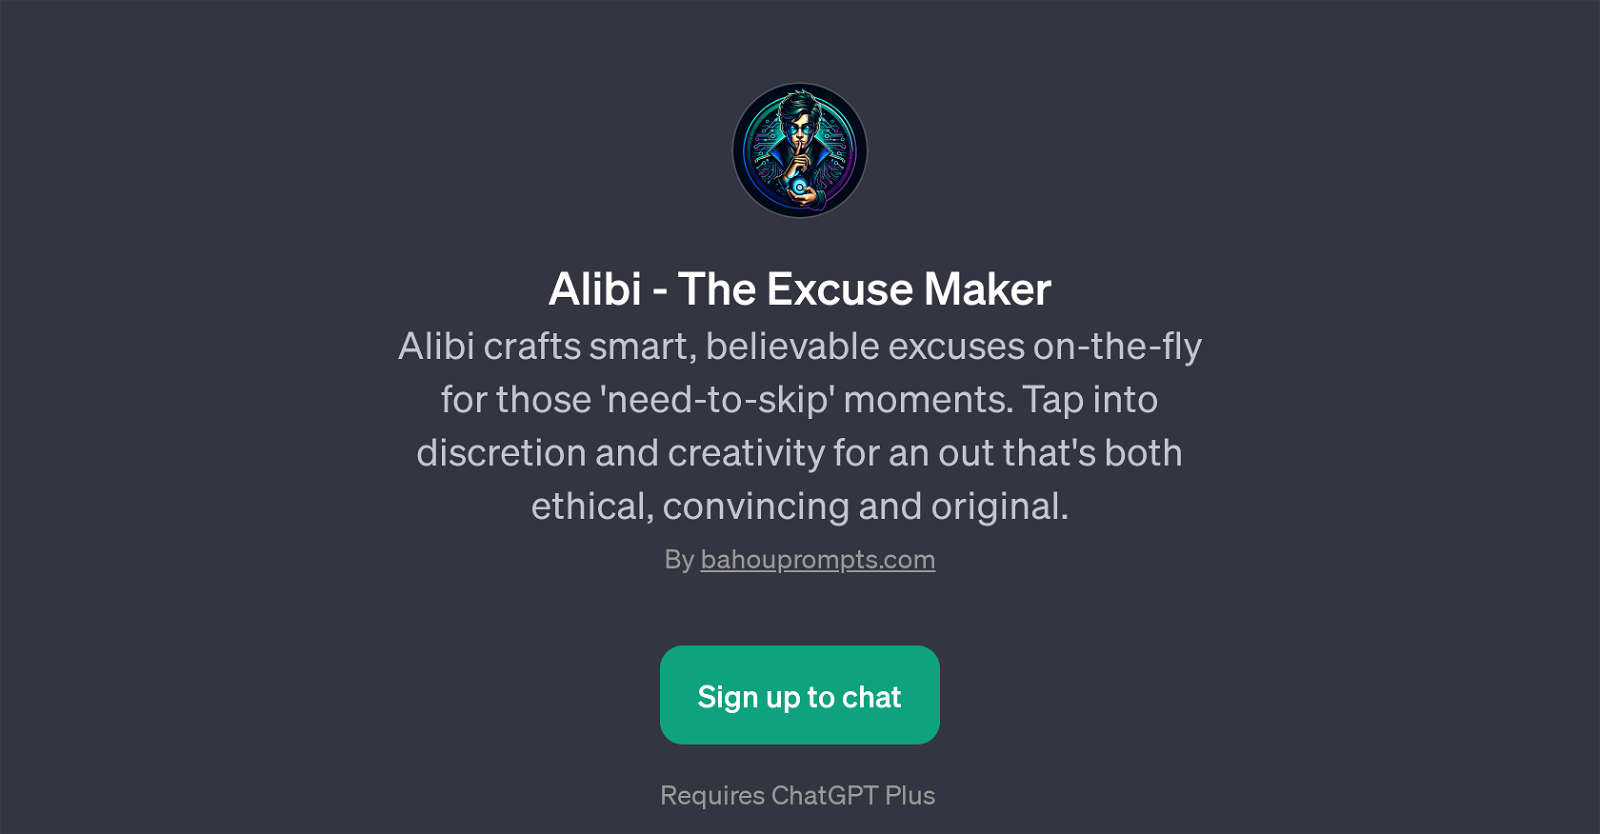 Alibi - The Excuse Maker website